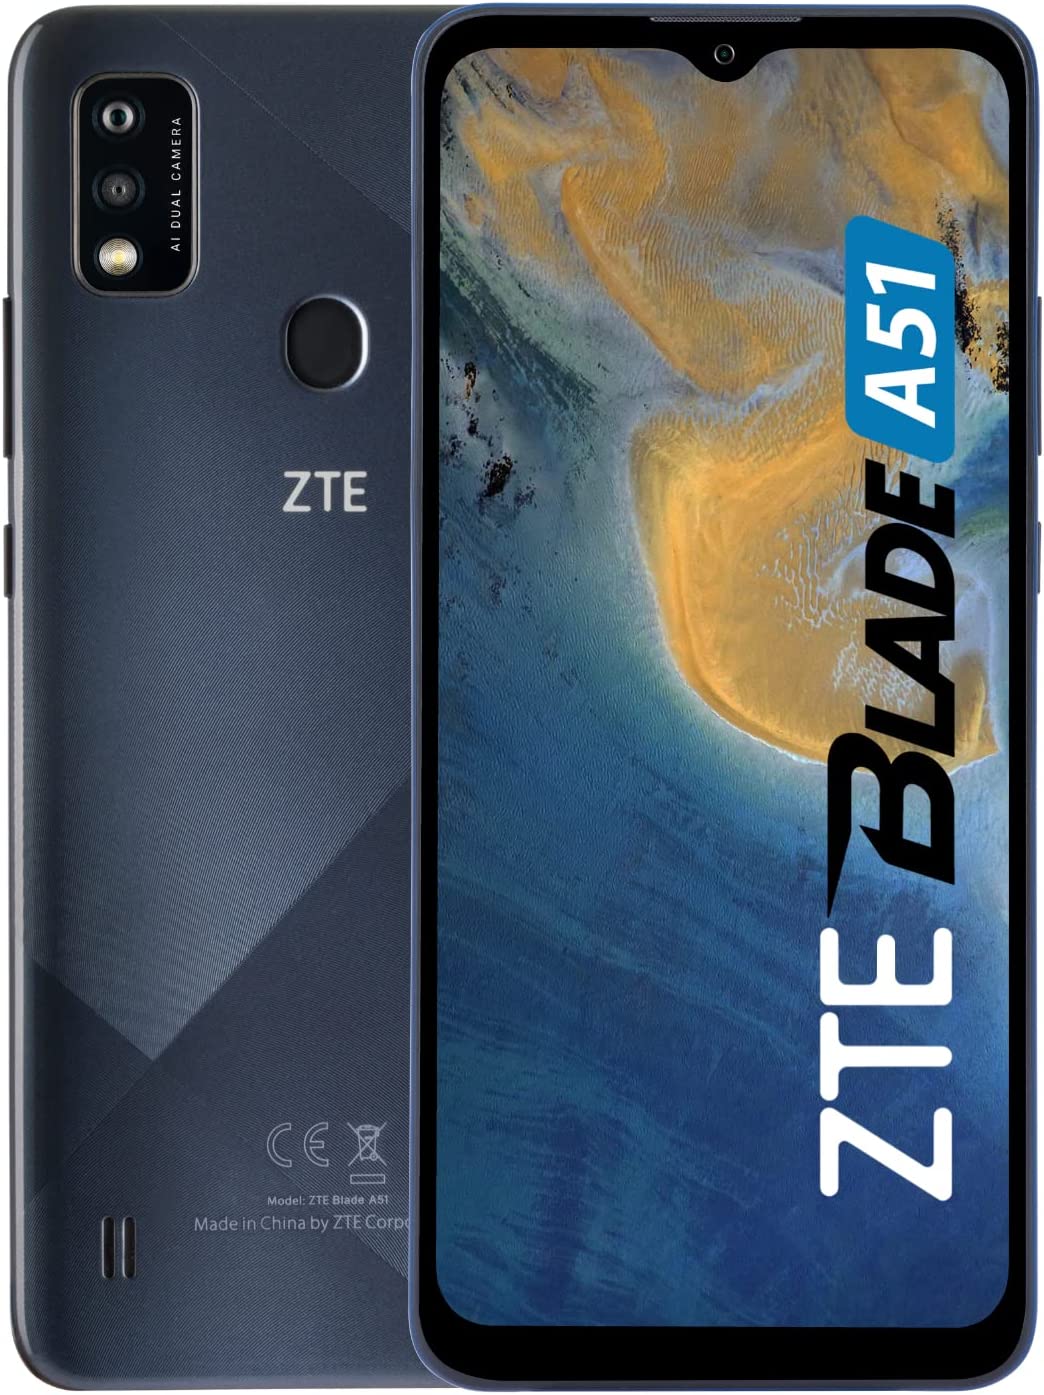 ZTE Blade A51